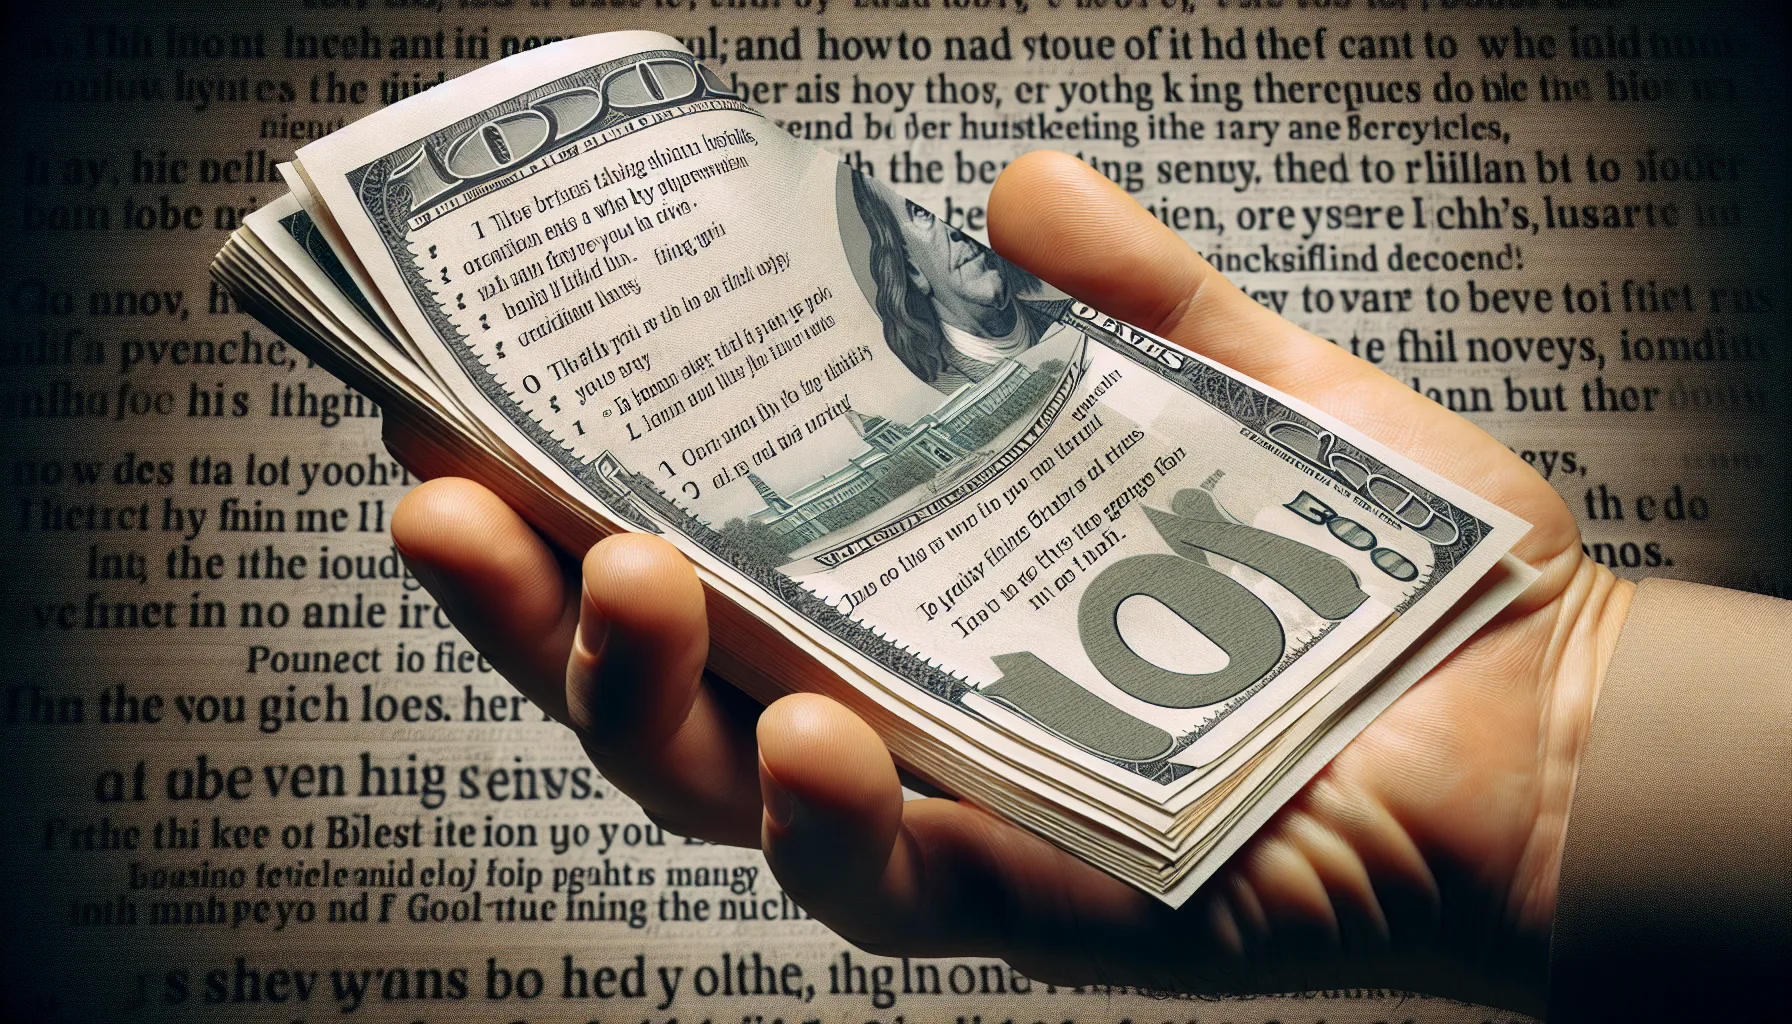 Imagen ilustrativa de un billete de dinero y una mano extendida, simbolizando el cohecho, con un texto sobre cómo prevenir y evitar esta práctica según las enseñanzas bíblicas.